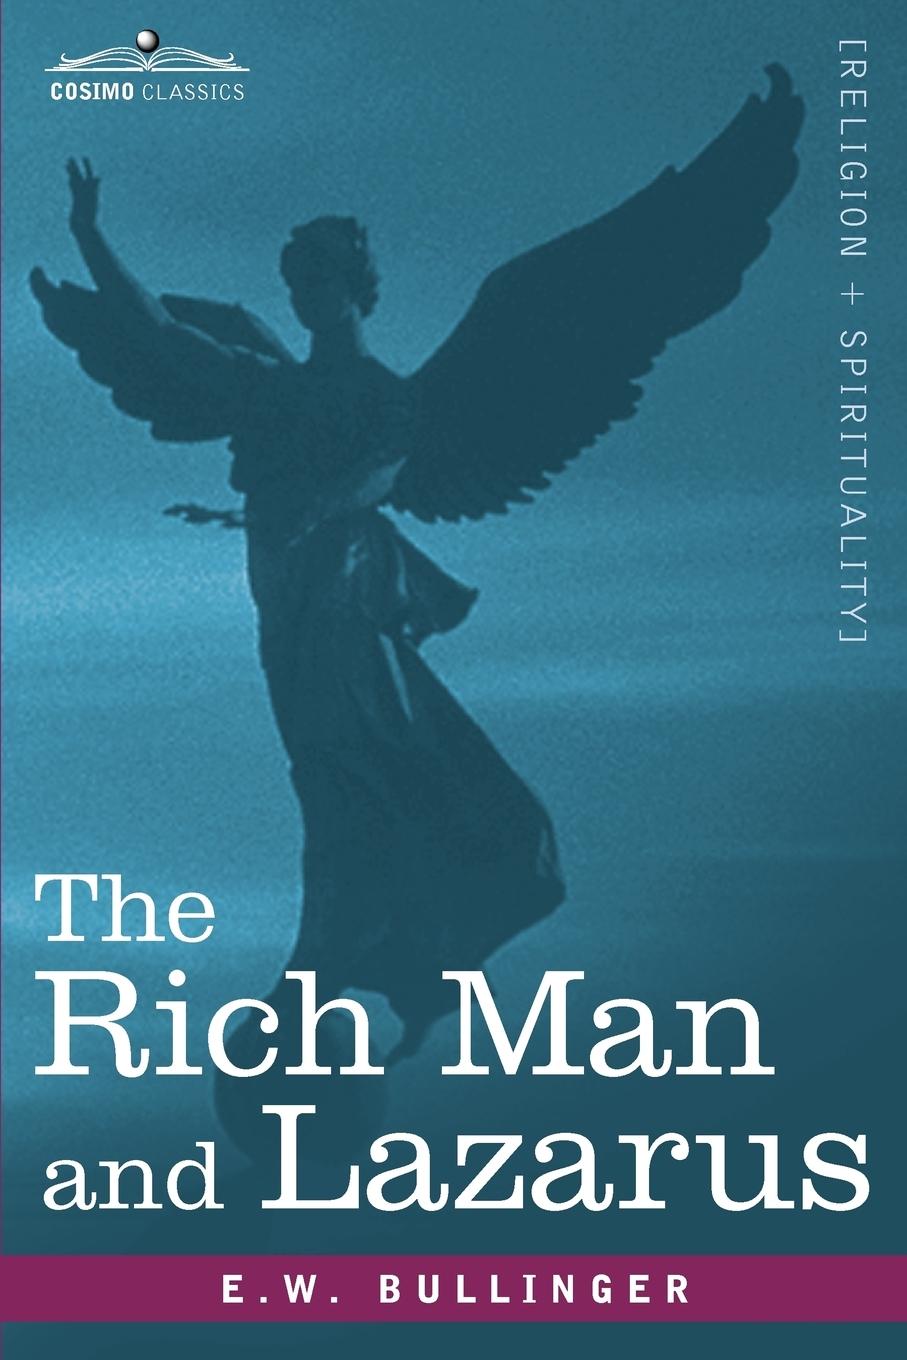 The Rich Man and Lazarus / E. W. Bullinger / Taschenbuch / Paperback / Englisch / 2012 / Cosimo Classics / EAN 9781616402716 - Bullinger, E. W.